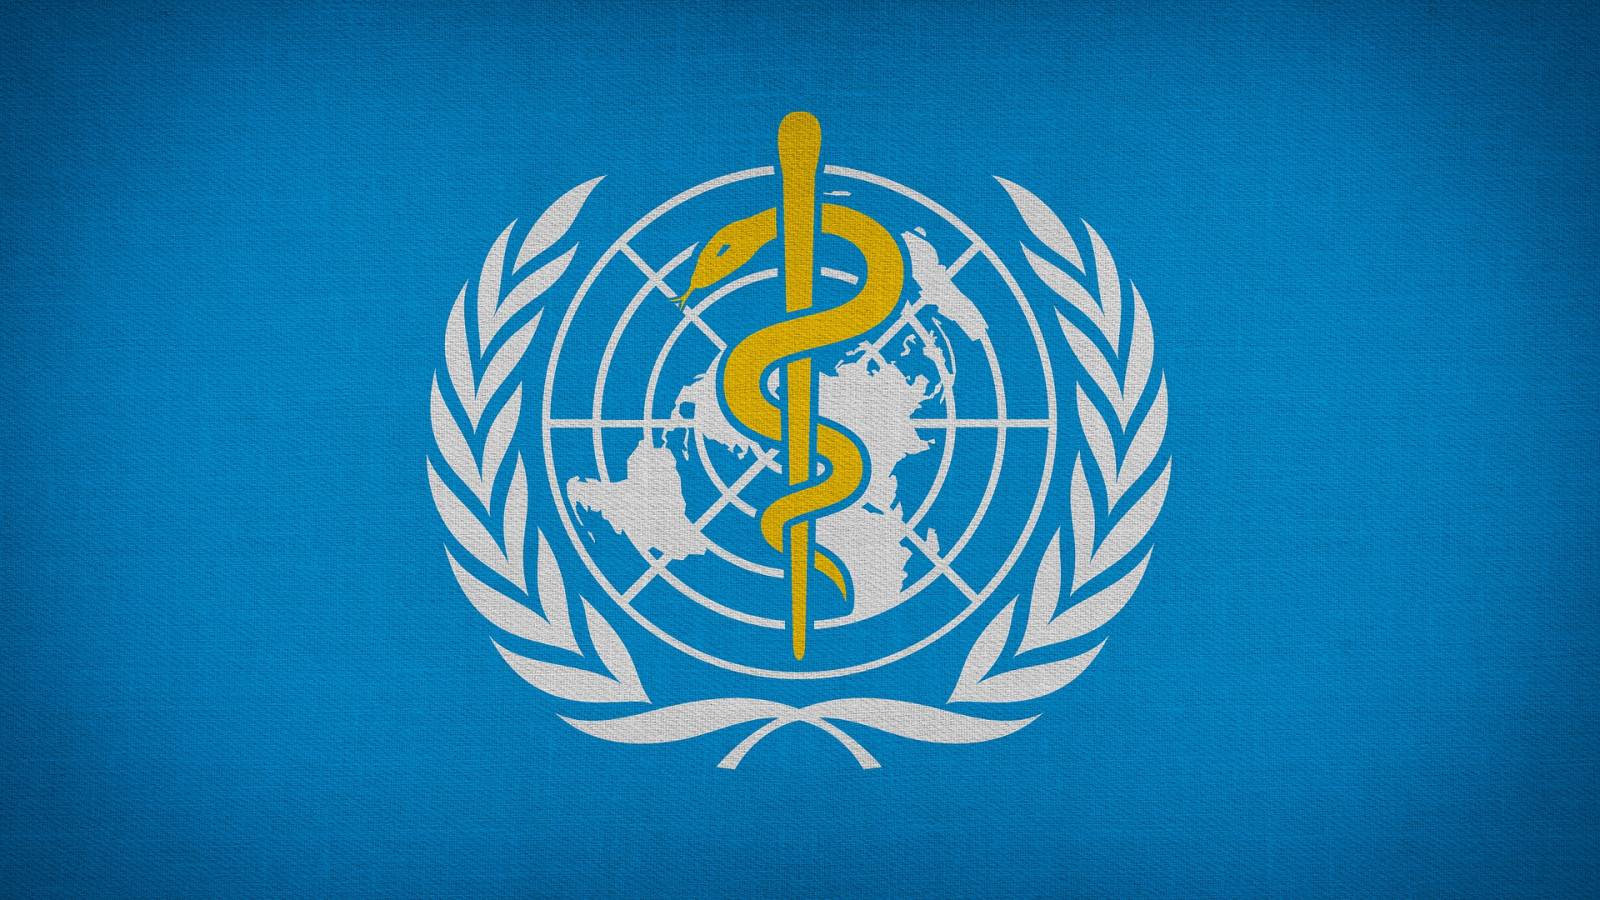 Les actions requises par l'OMS pour résoudre le problème mondial préoccupant de l'accès aux services médicaux